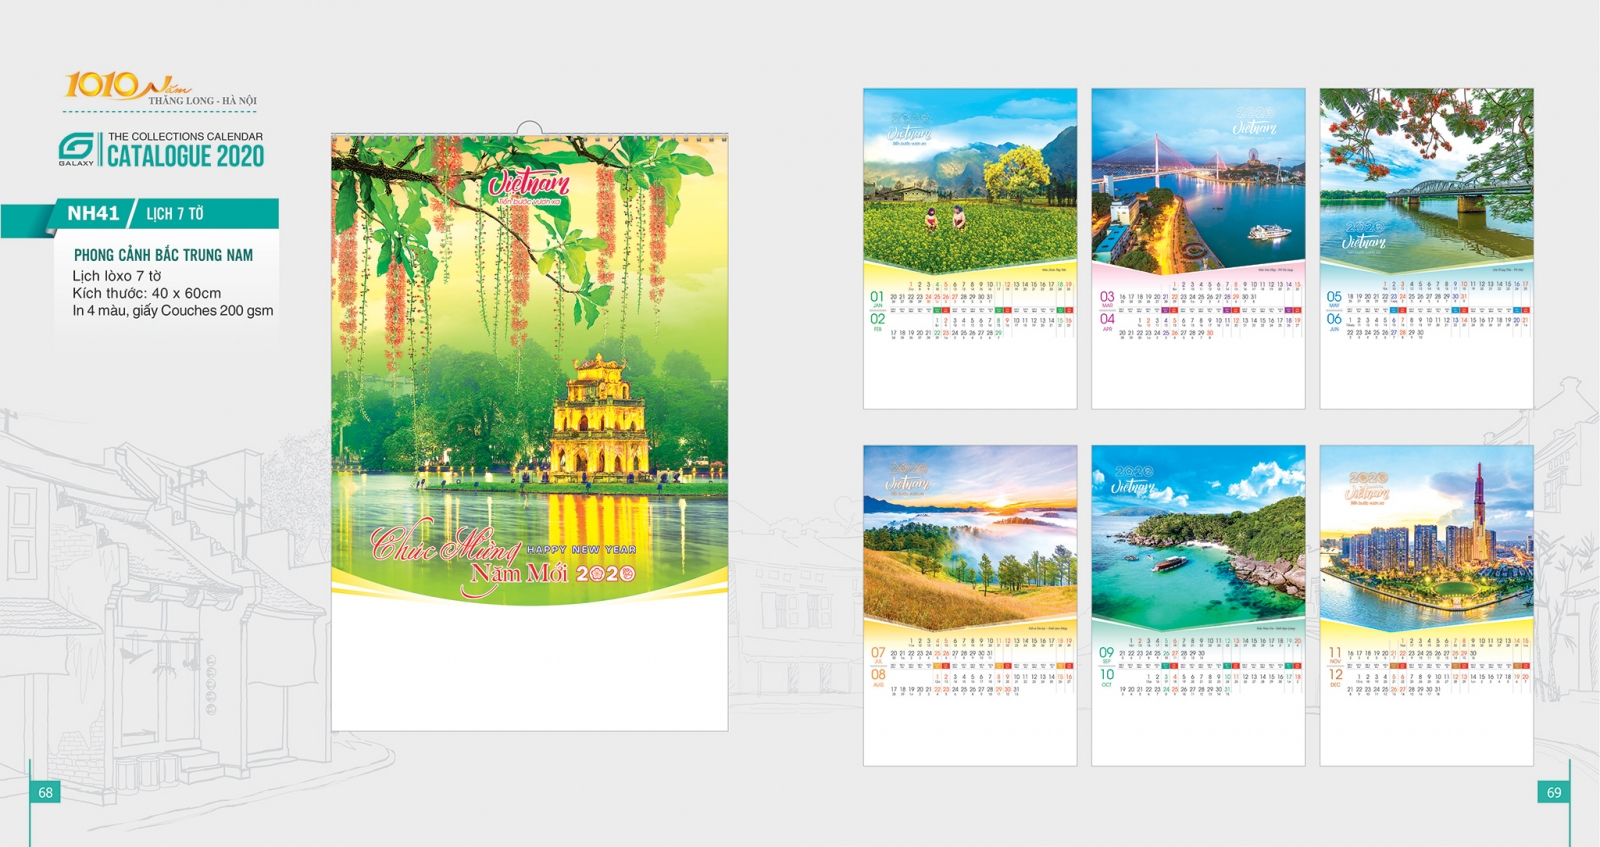 Tổng hợp 1 số mẫu lịch 2020 đẹp và ấn tượng chủ đề Thắng Cảnh Hà Nội